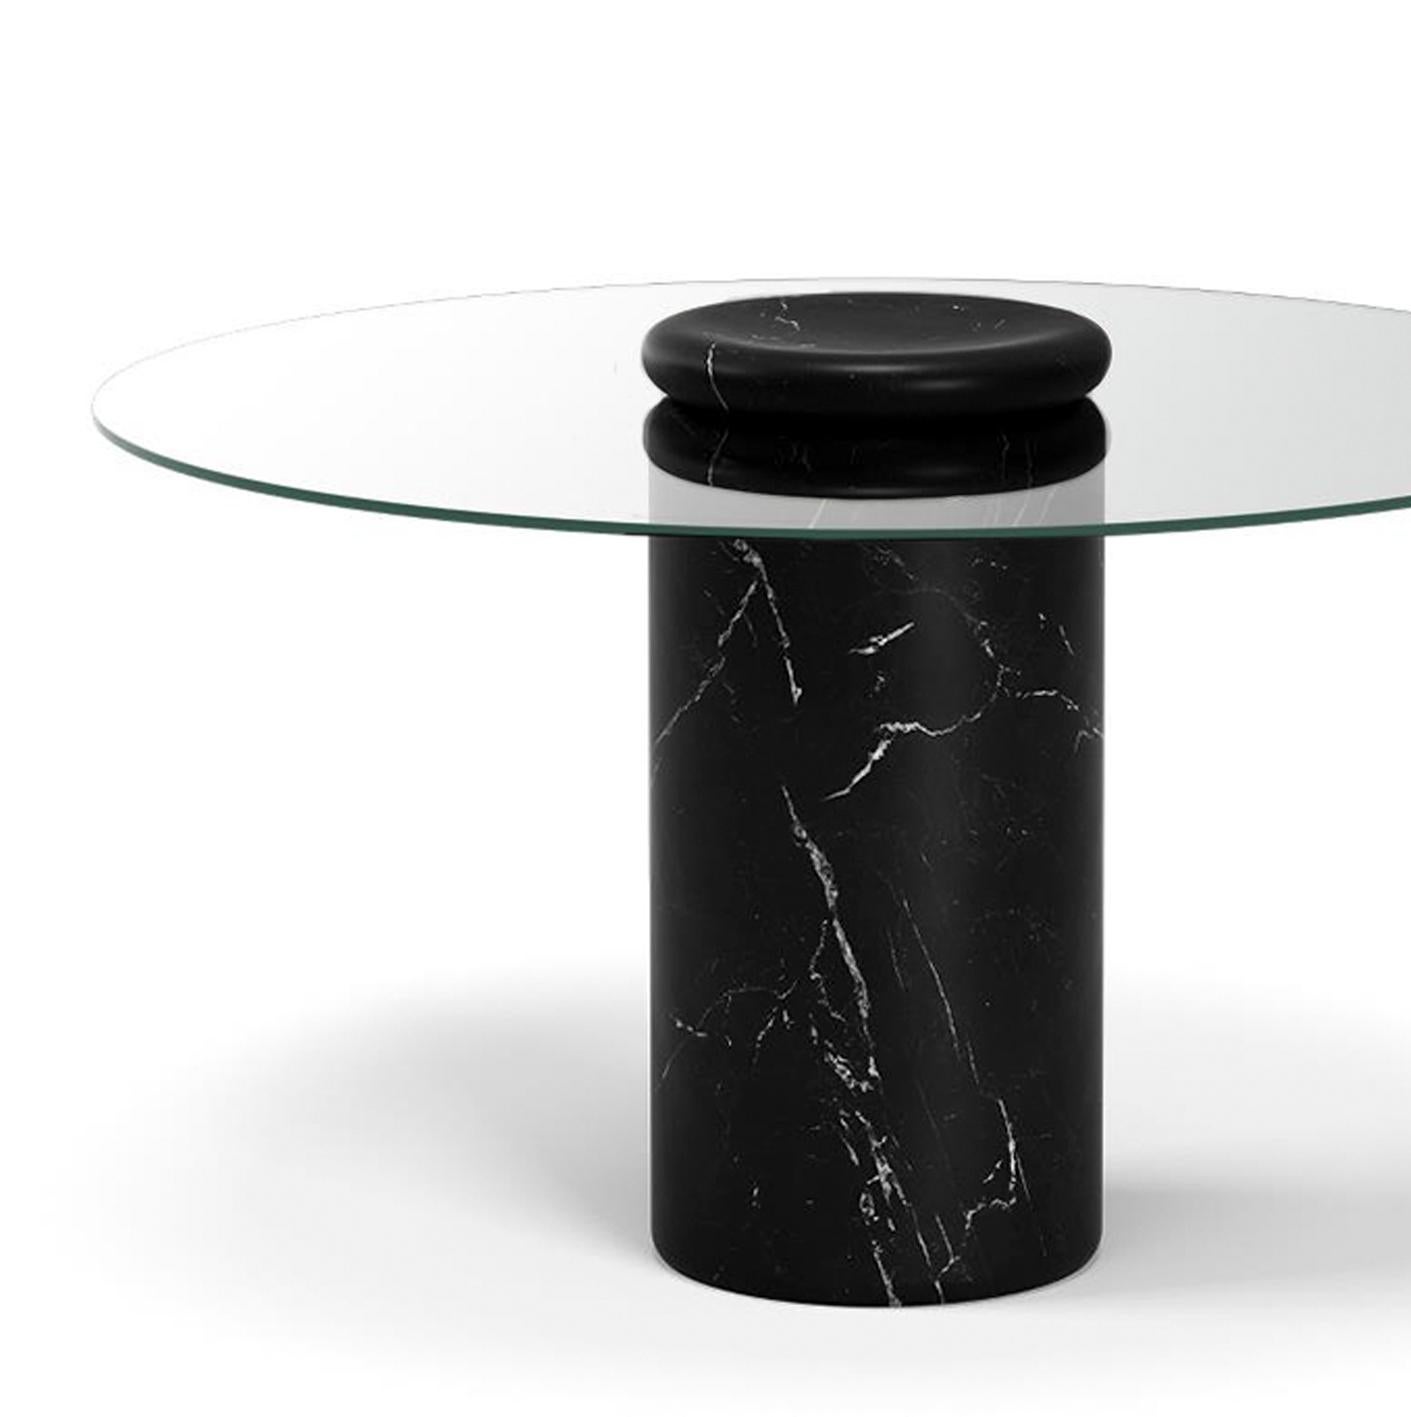 Tisch entworfen von Angelo Mangiarotti 

Castore ist ein Tisch aus Glas und Marmor des italienischen Architekten, Bildhauers und Designers Angelo Mangiarotti. Das 1975 für Sorgente dei Mobili entworfene, unverwechselbare Design wird nun von